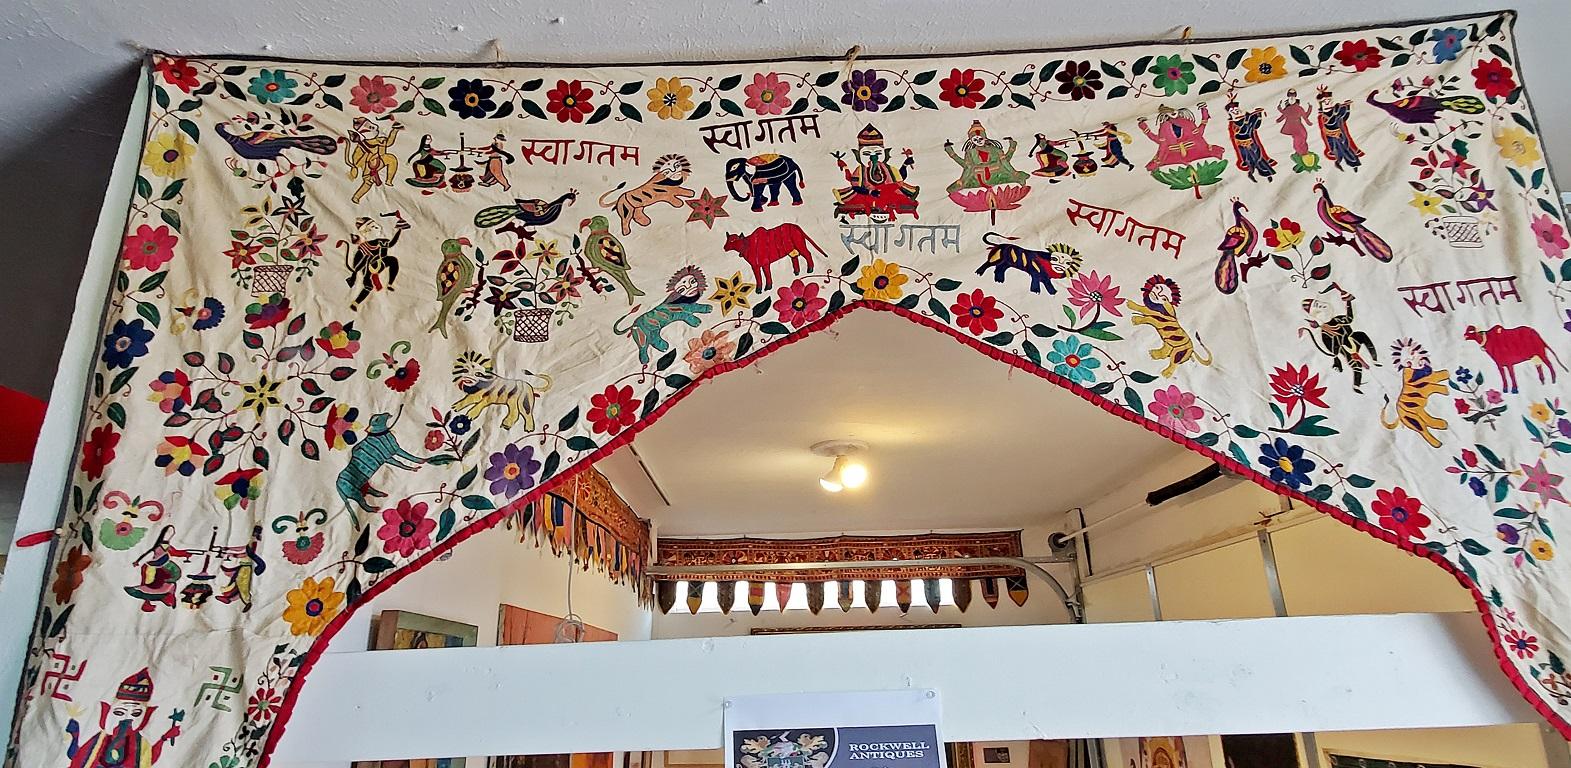 Nous vous présentons une belle tapisserie de porte indienne vintage.

Début du 20e siècle, vers 1920.

Probablement de l'Inde centrale.

Fabriqué en coton et cousu ou brodé à la main avec diverses images indiennes de bétail, tigres, éléphants,